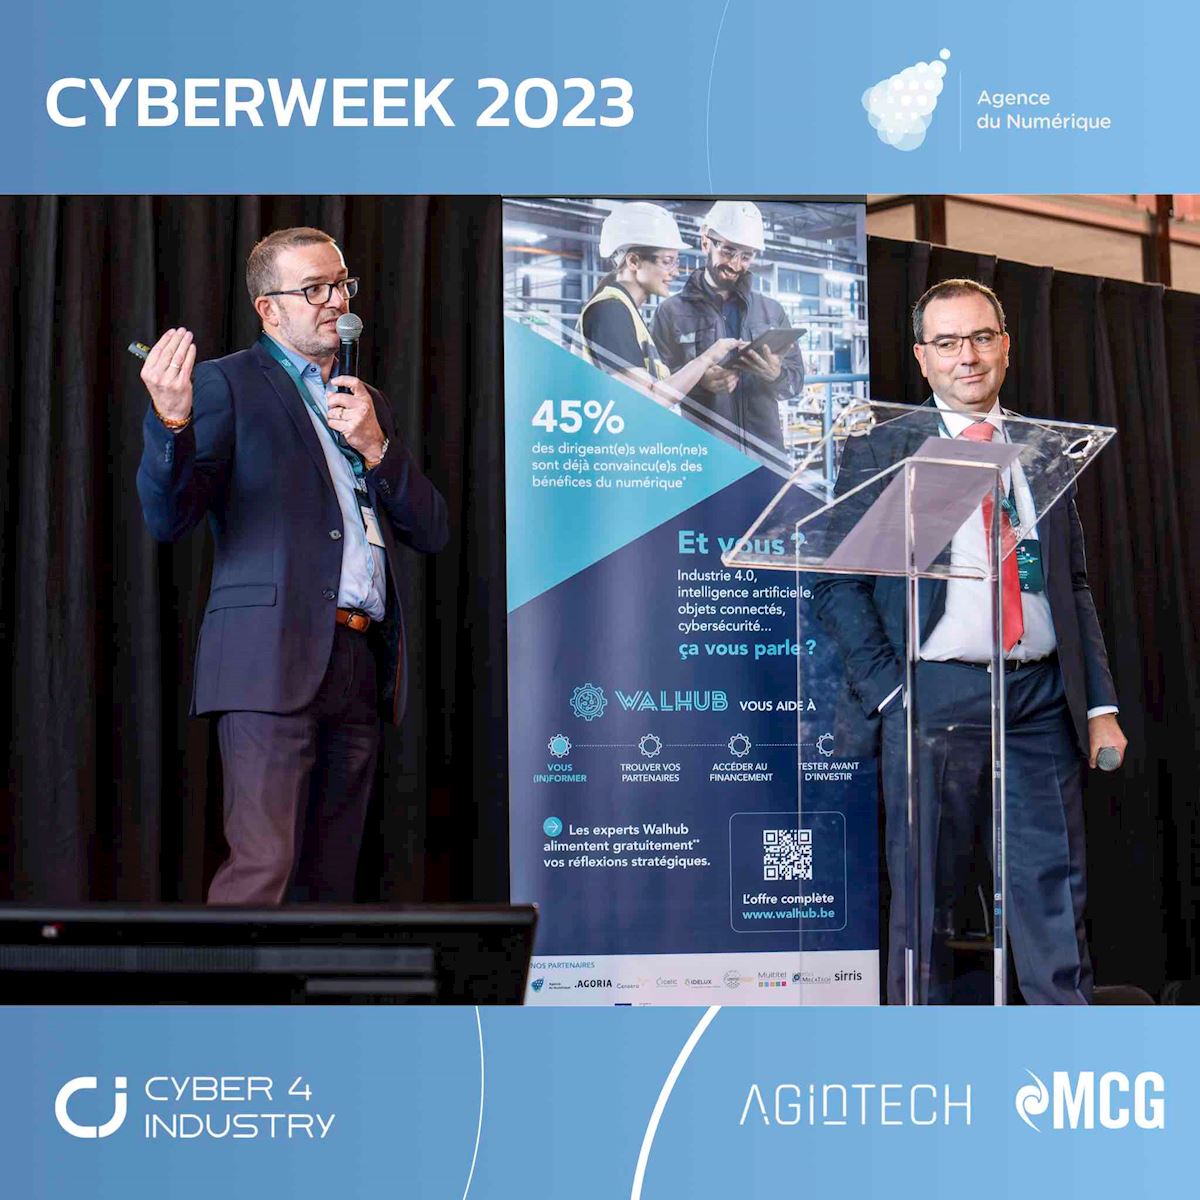 Cyber 4 Industry à la Cyberweek: on ne s’improvise pas expert dans la Cybersécurité pour l’OT !